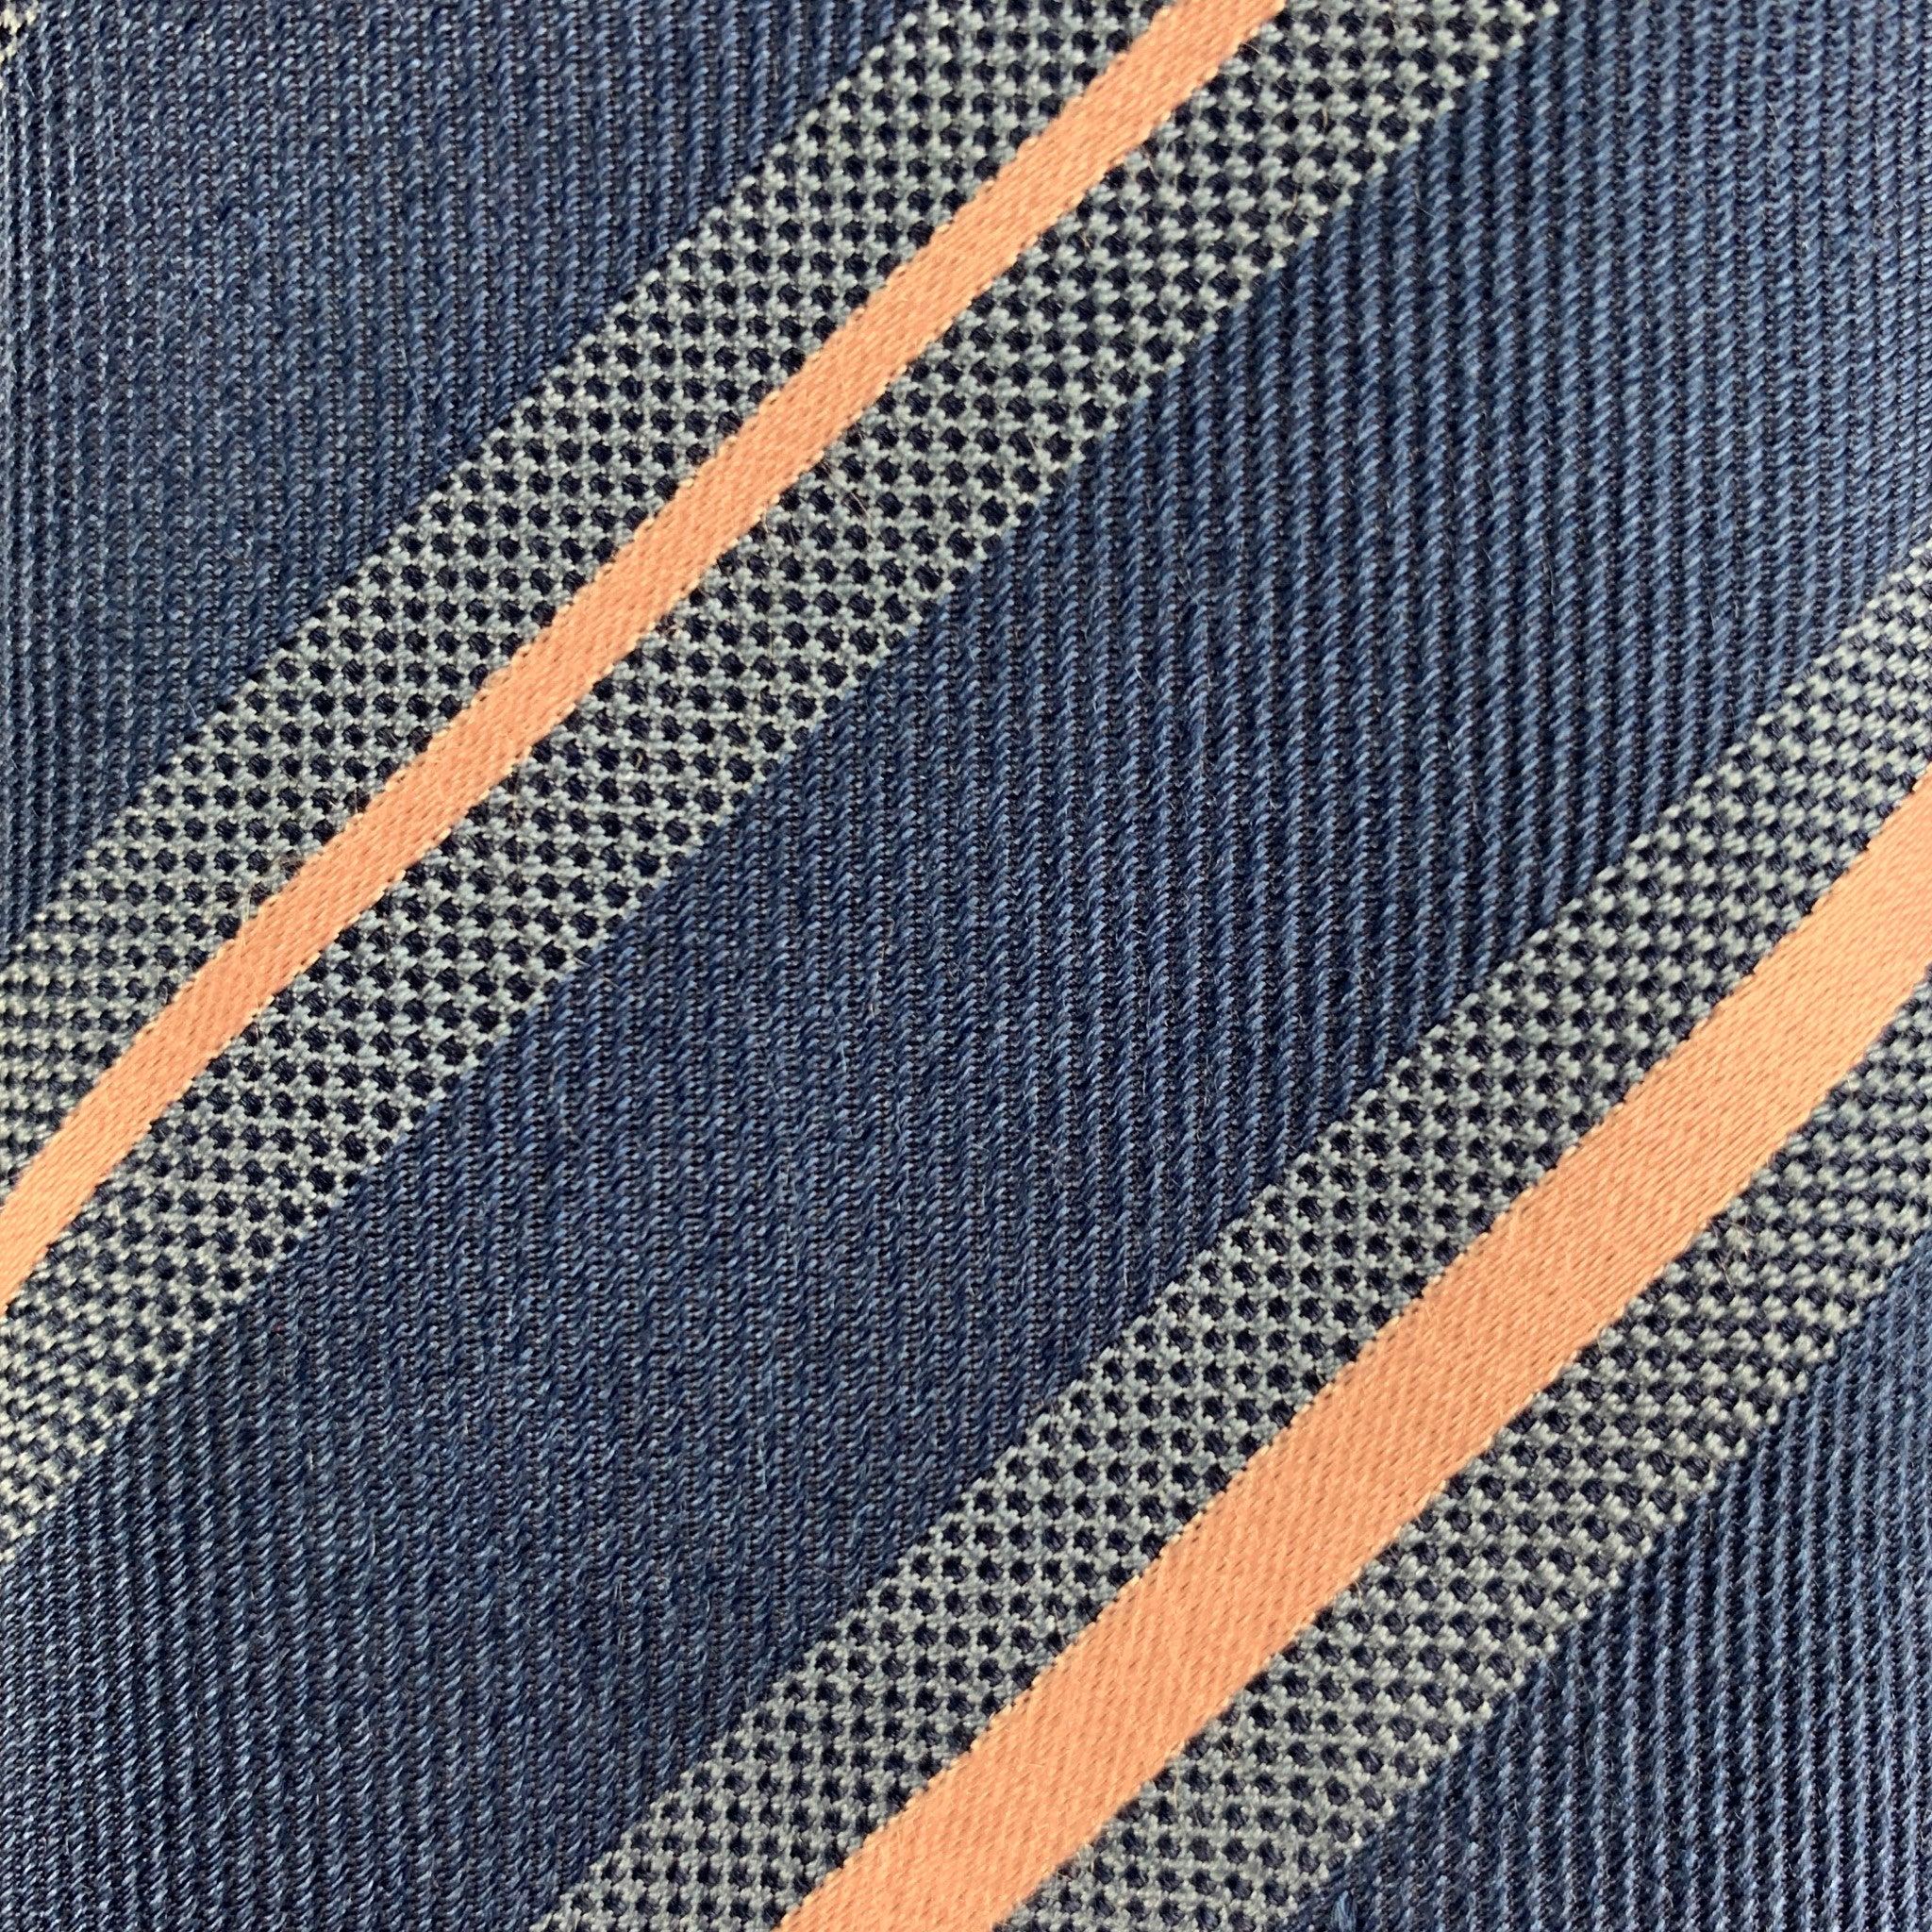 Die klassische Krawatte von BRIONI besteht aus 100 % Seide und ist mit einem blau-rosafarbenen, diagonal gestreiften Muster versehen. Handgefertigt in Italien, sehr guter gebrauchter Zustand. 

Abmessungen: 
  Breite: 3 Zoll Länge: 56 Zoll 



  
 